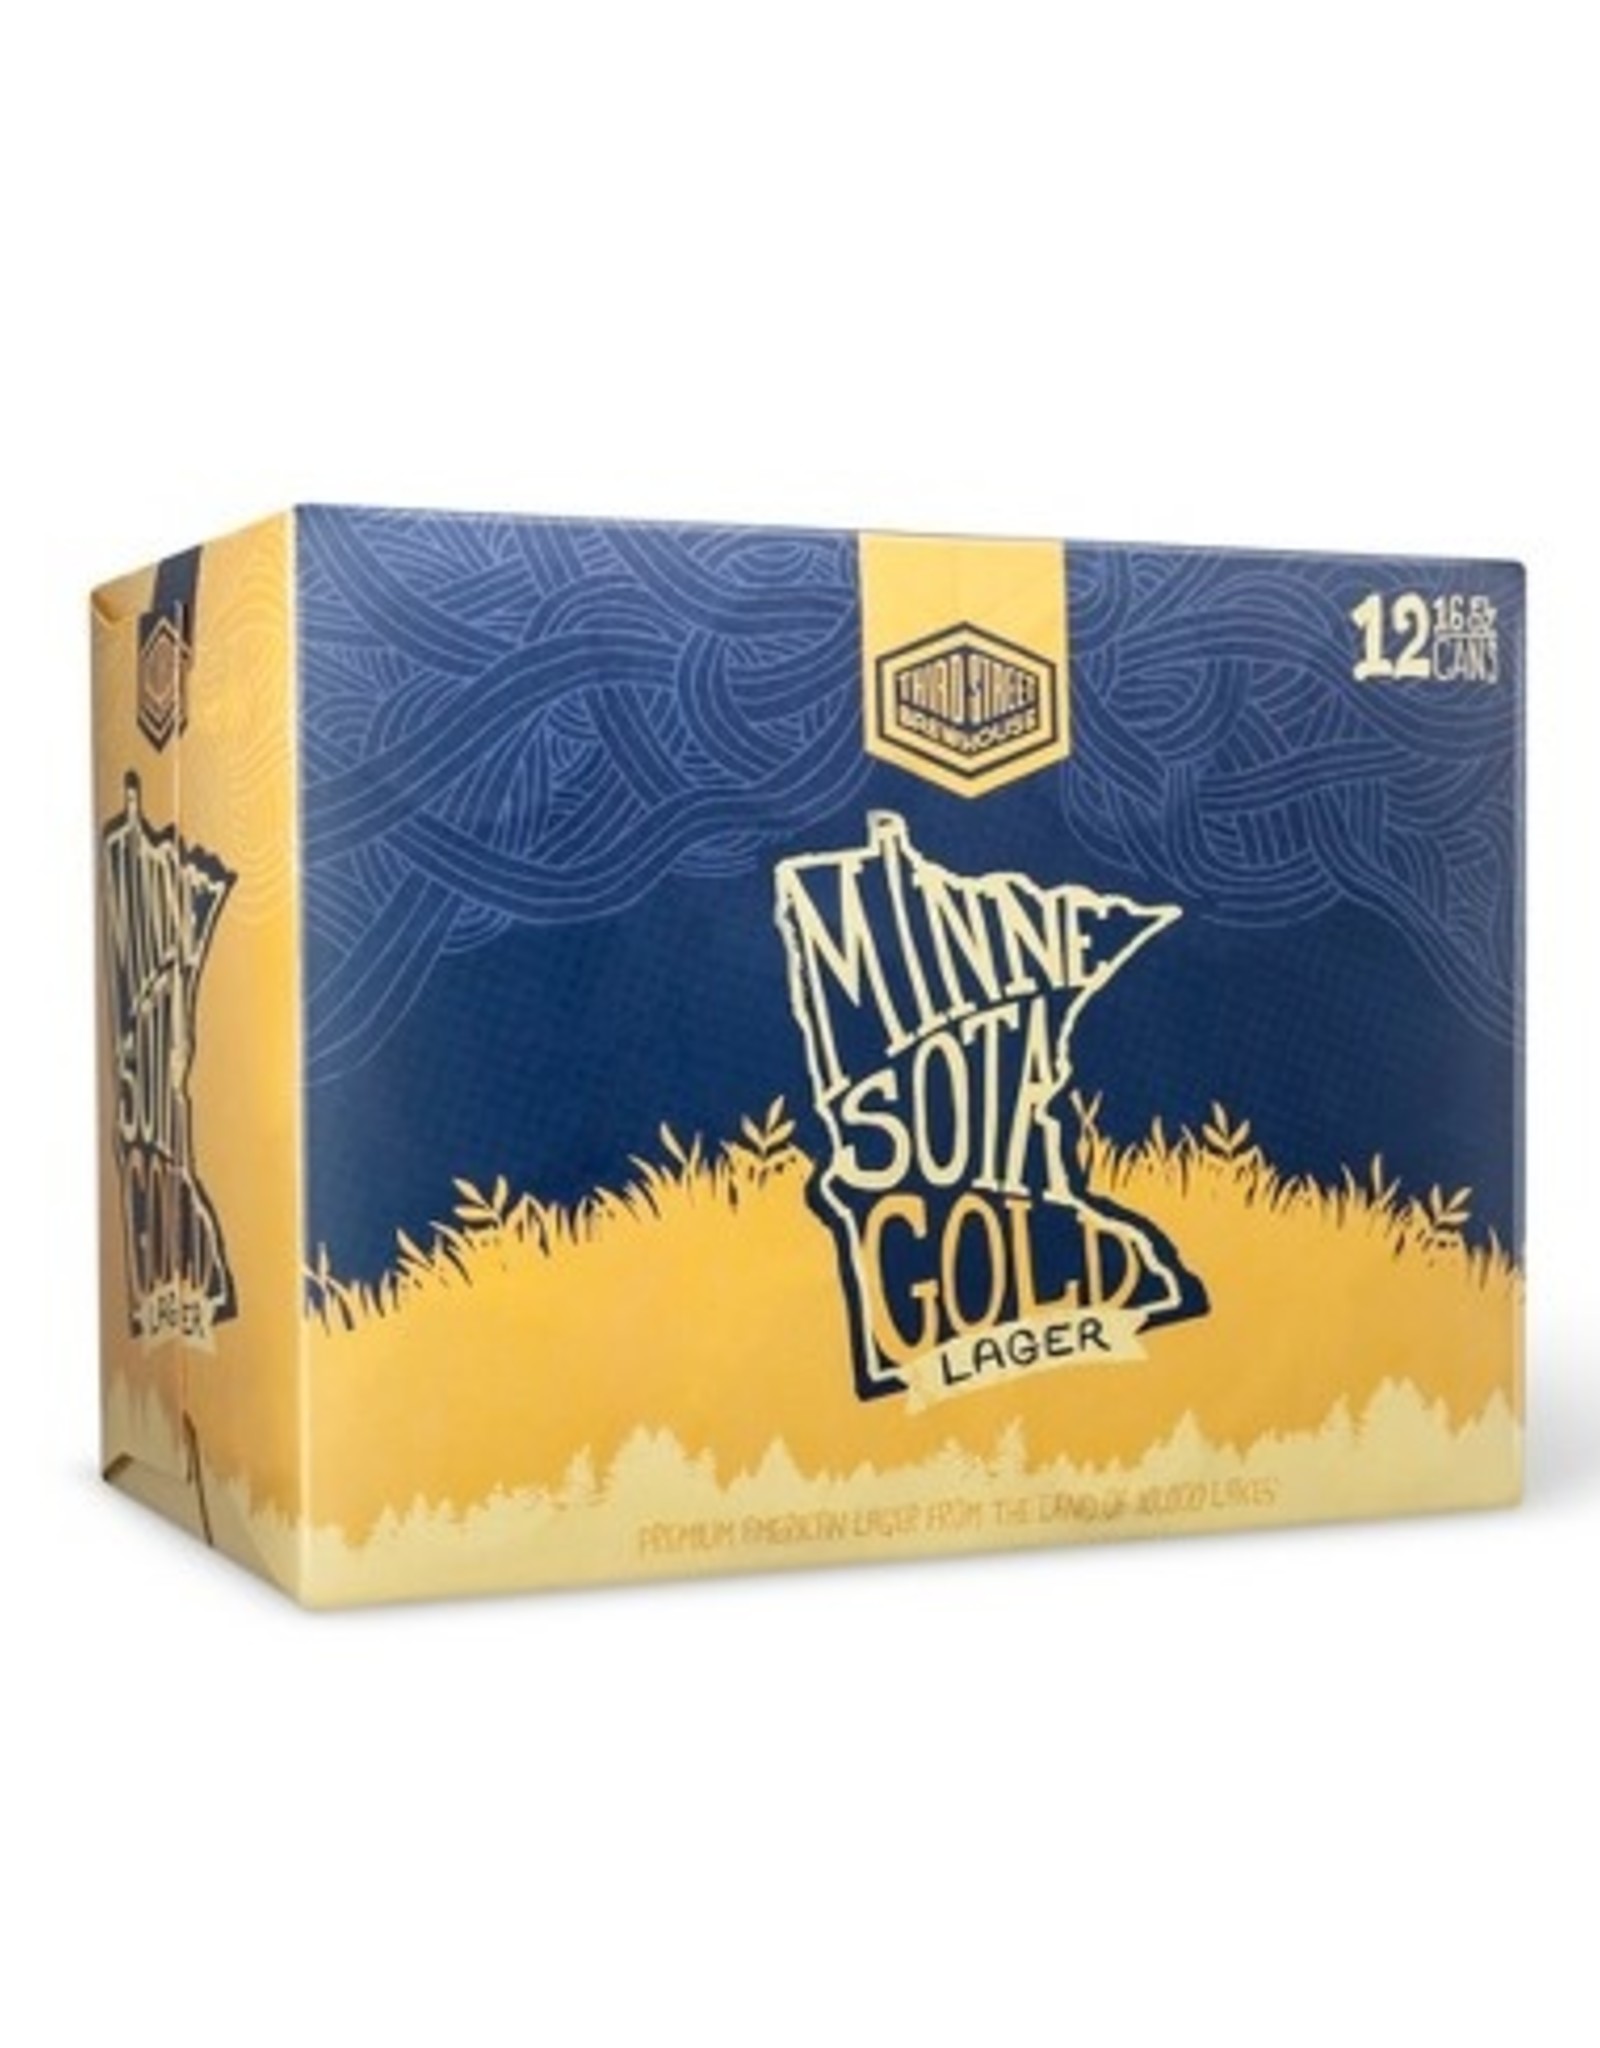 Third Street Minnesota Gold Light 12x16 oz cans